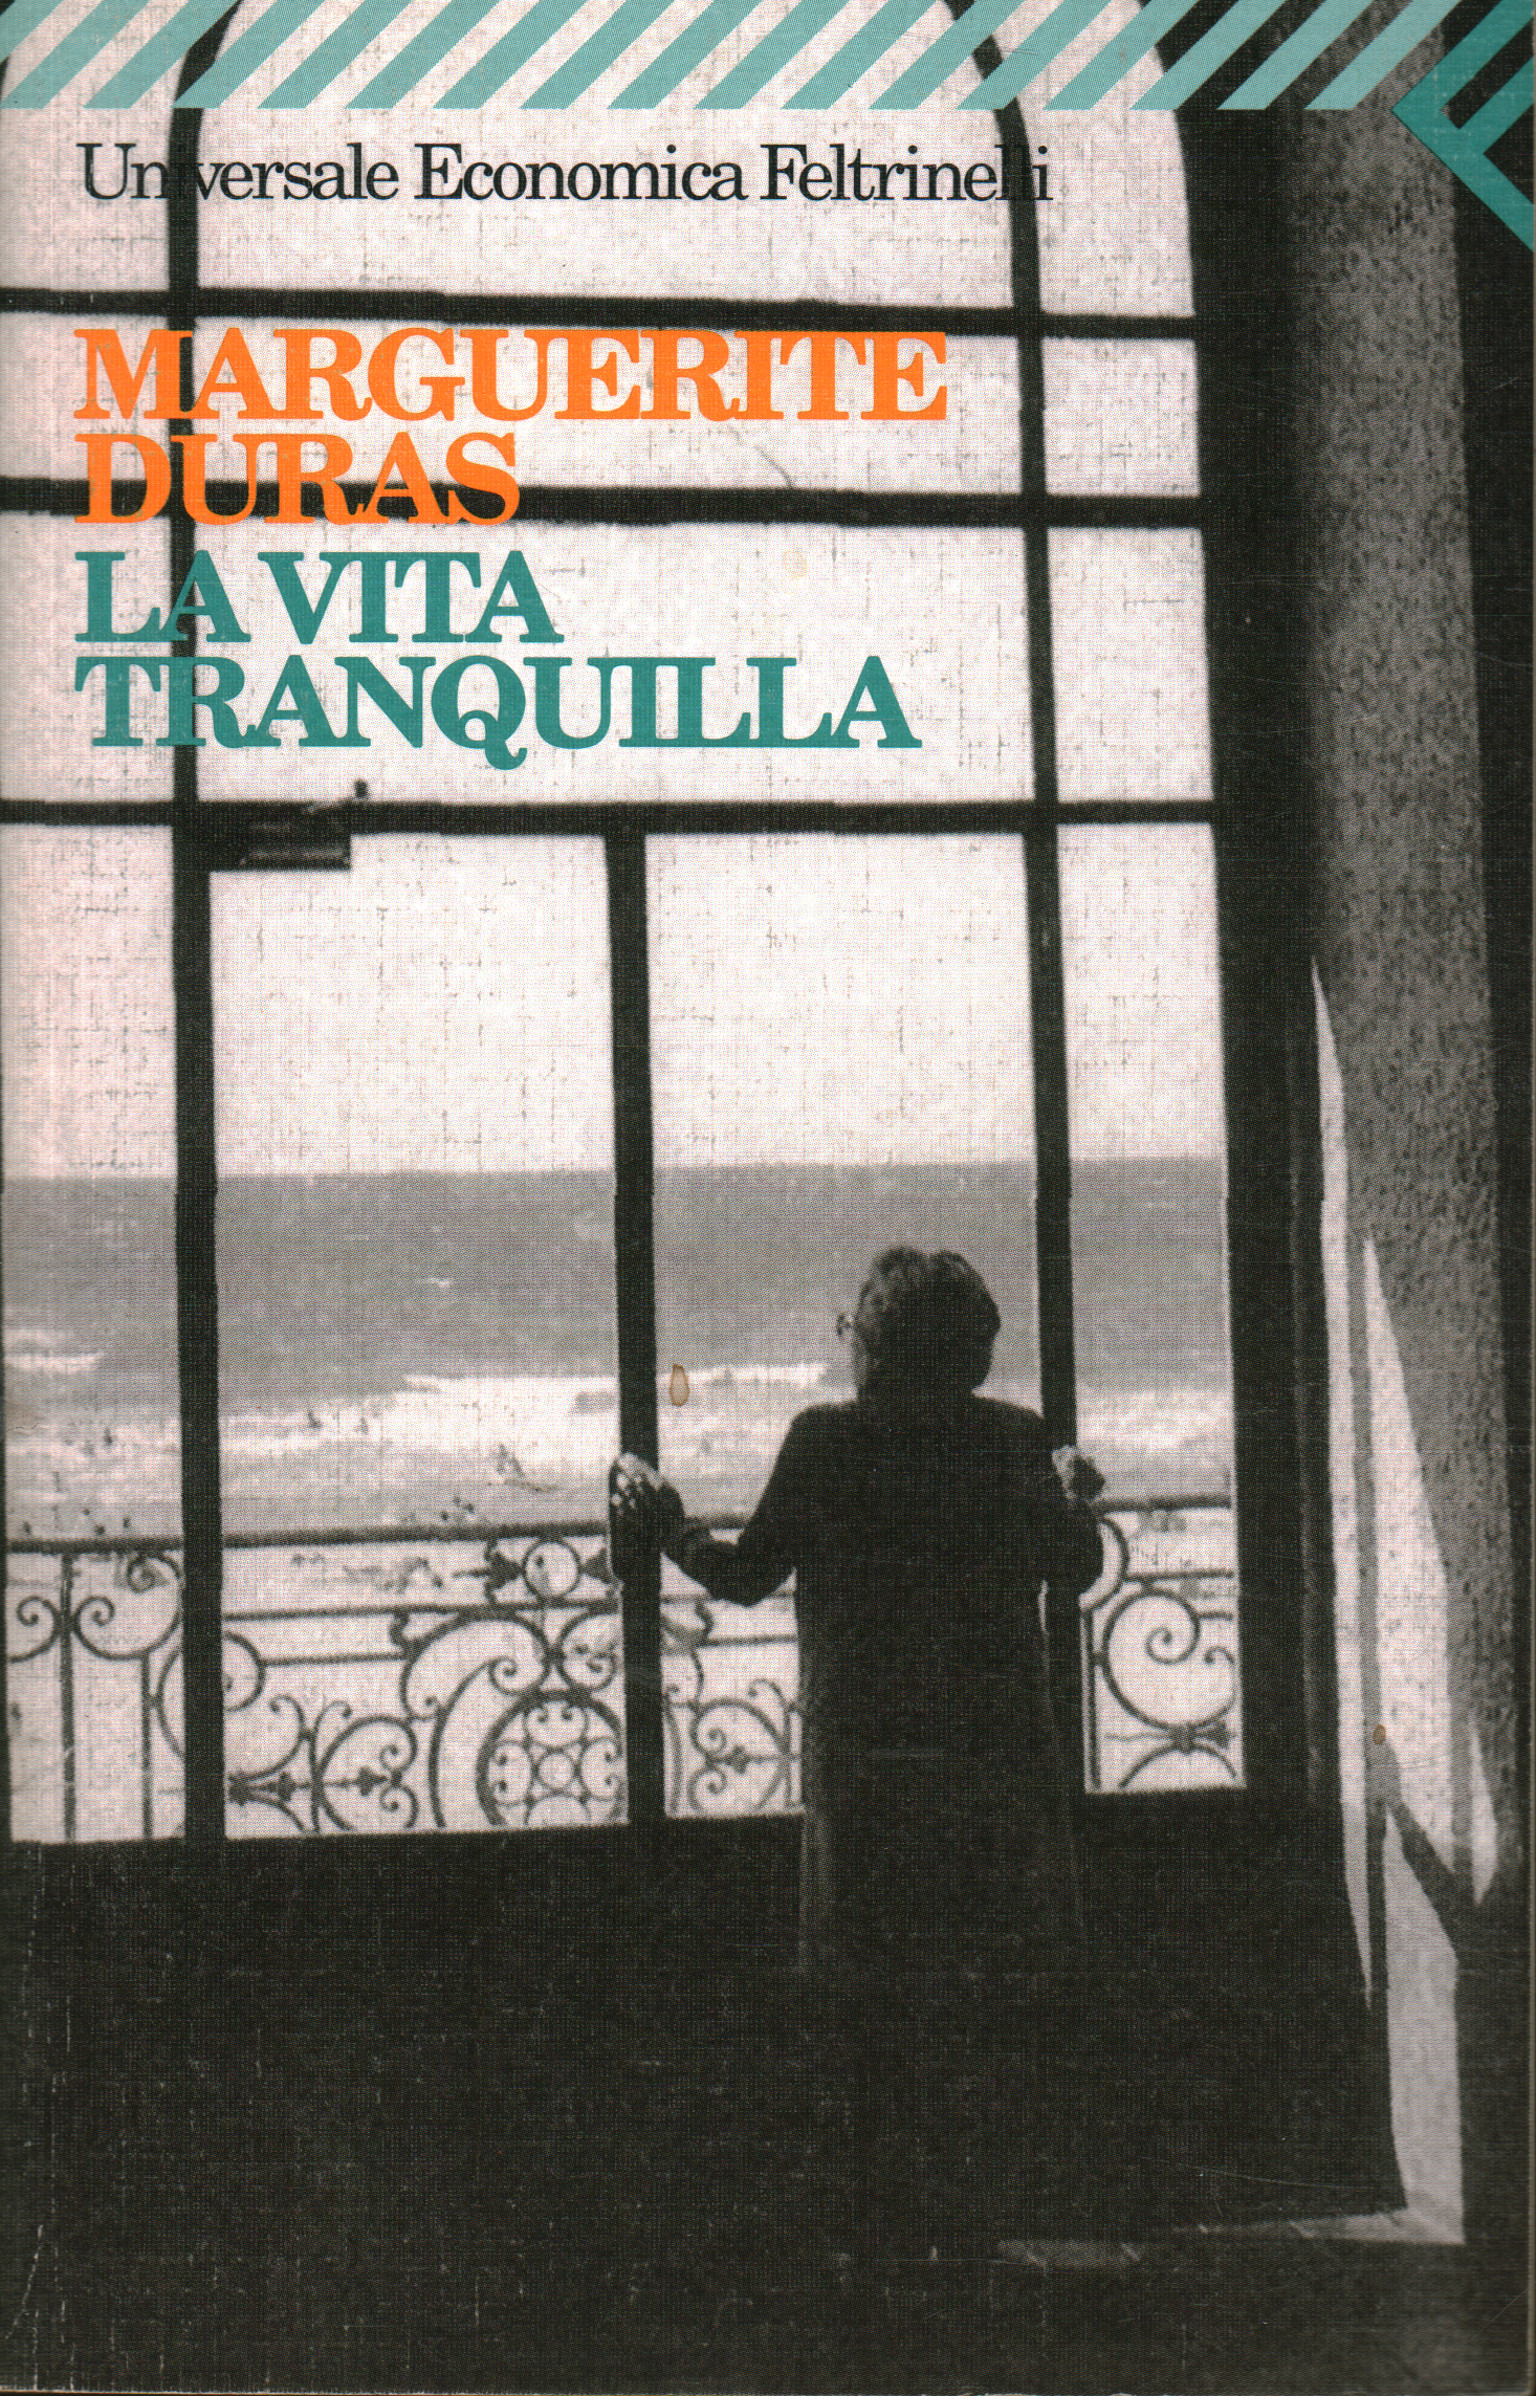 La vita tranquilla, Marguerite Duras